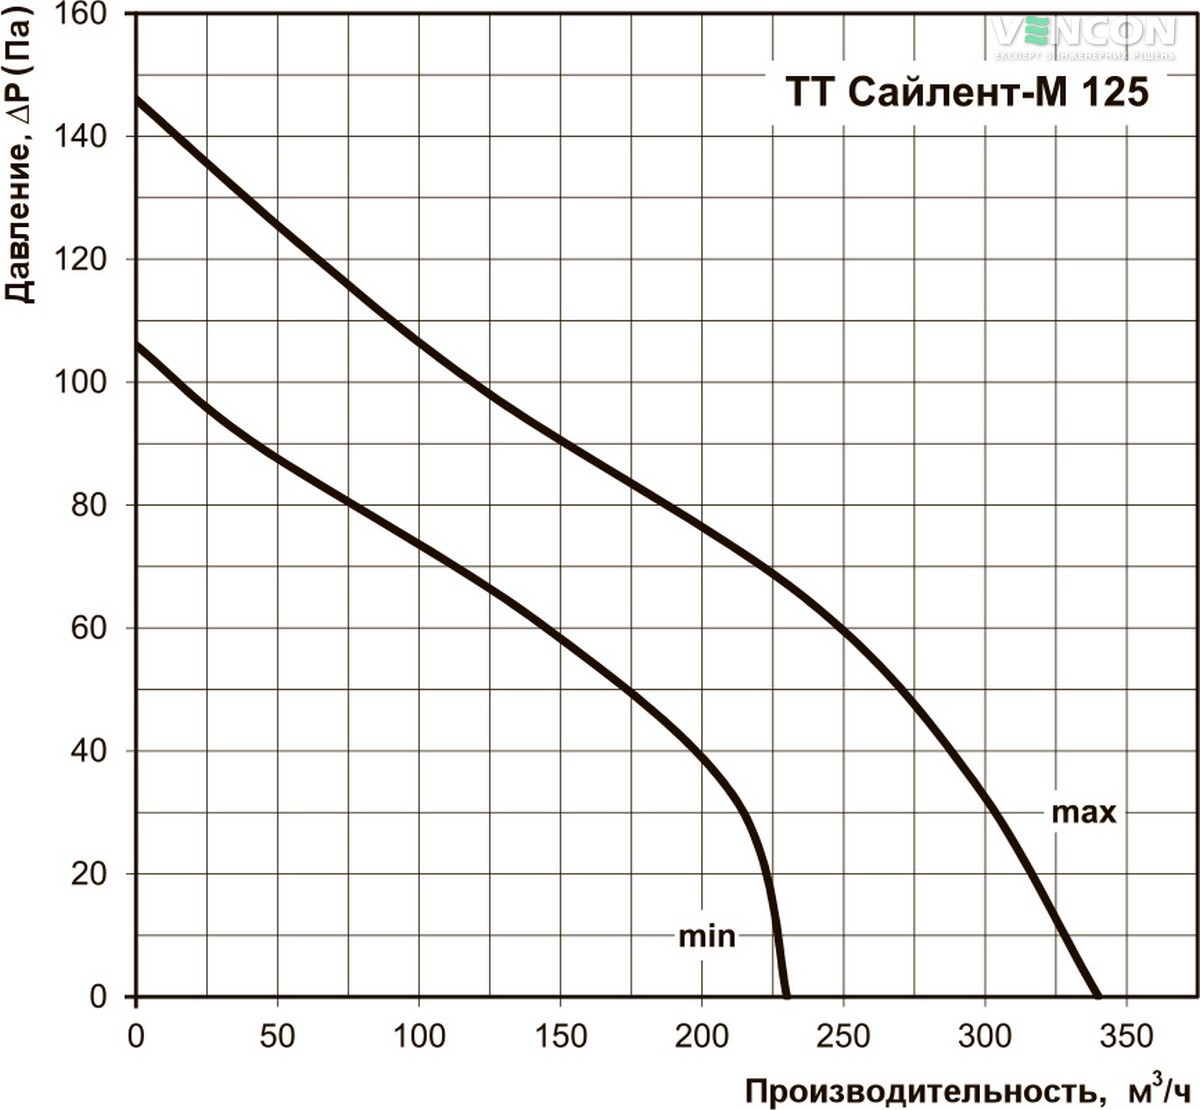 Вентс ТТ Сайлент-М 125 Діаграма продуктивності